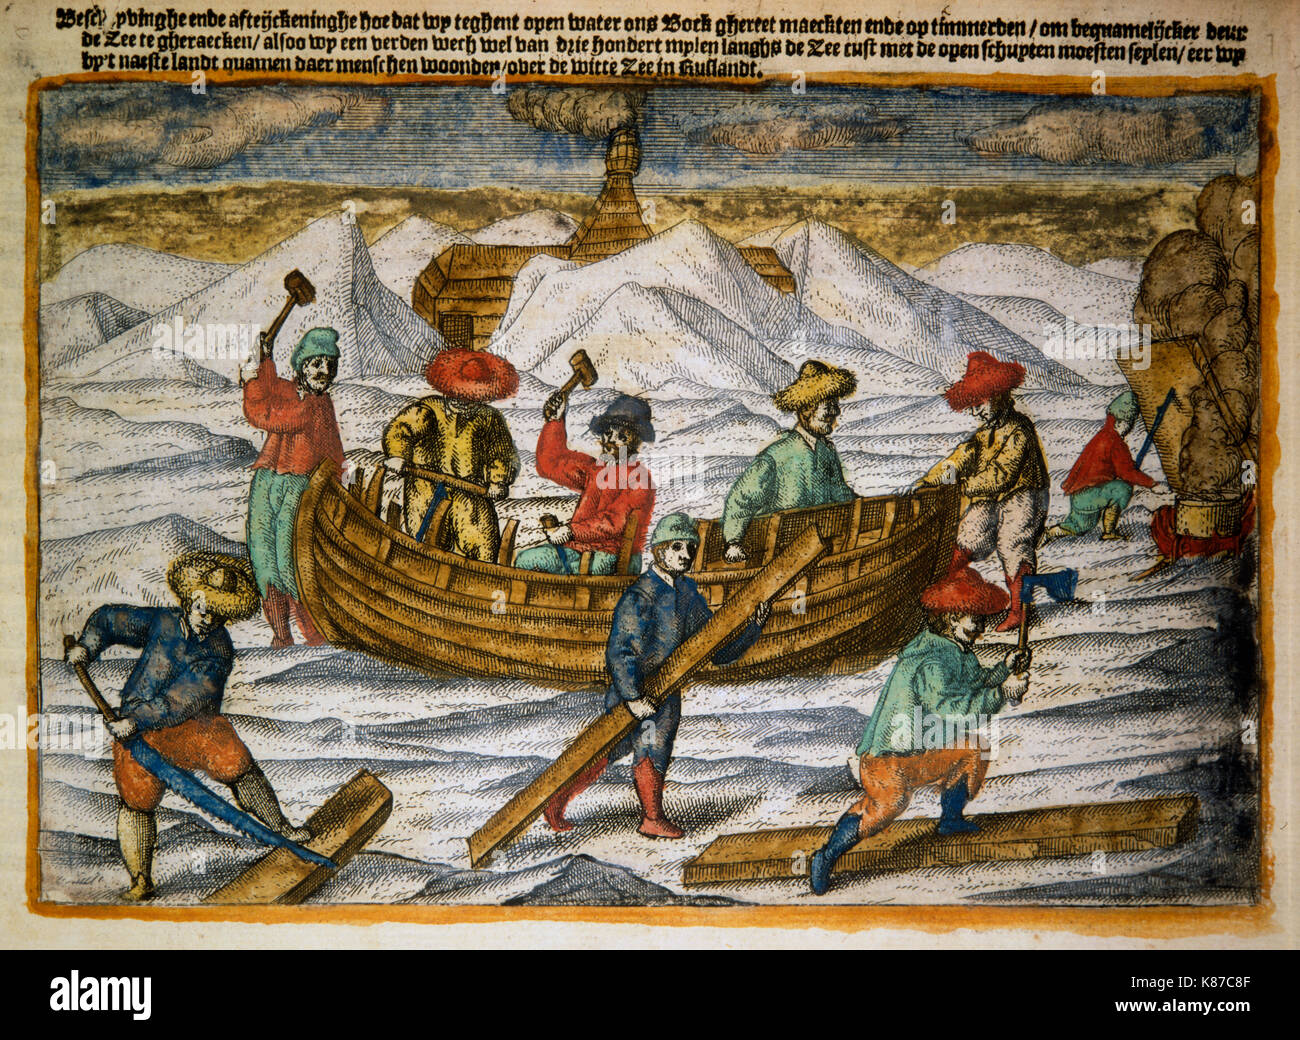 William Mare di Barents e il suo equipaggio intrappolati nell'Artico durante la loro terza spedizione del 1596. Guidati dal navigatore olandese ed esploratore William Mare di Barents Foto Stock